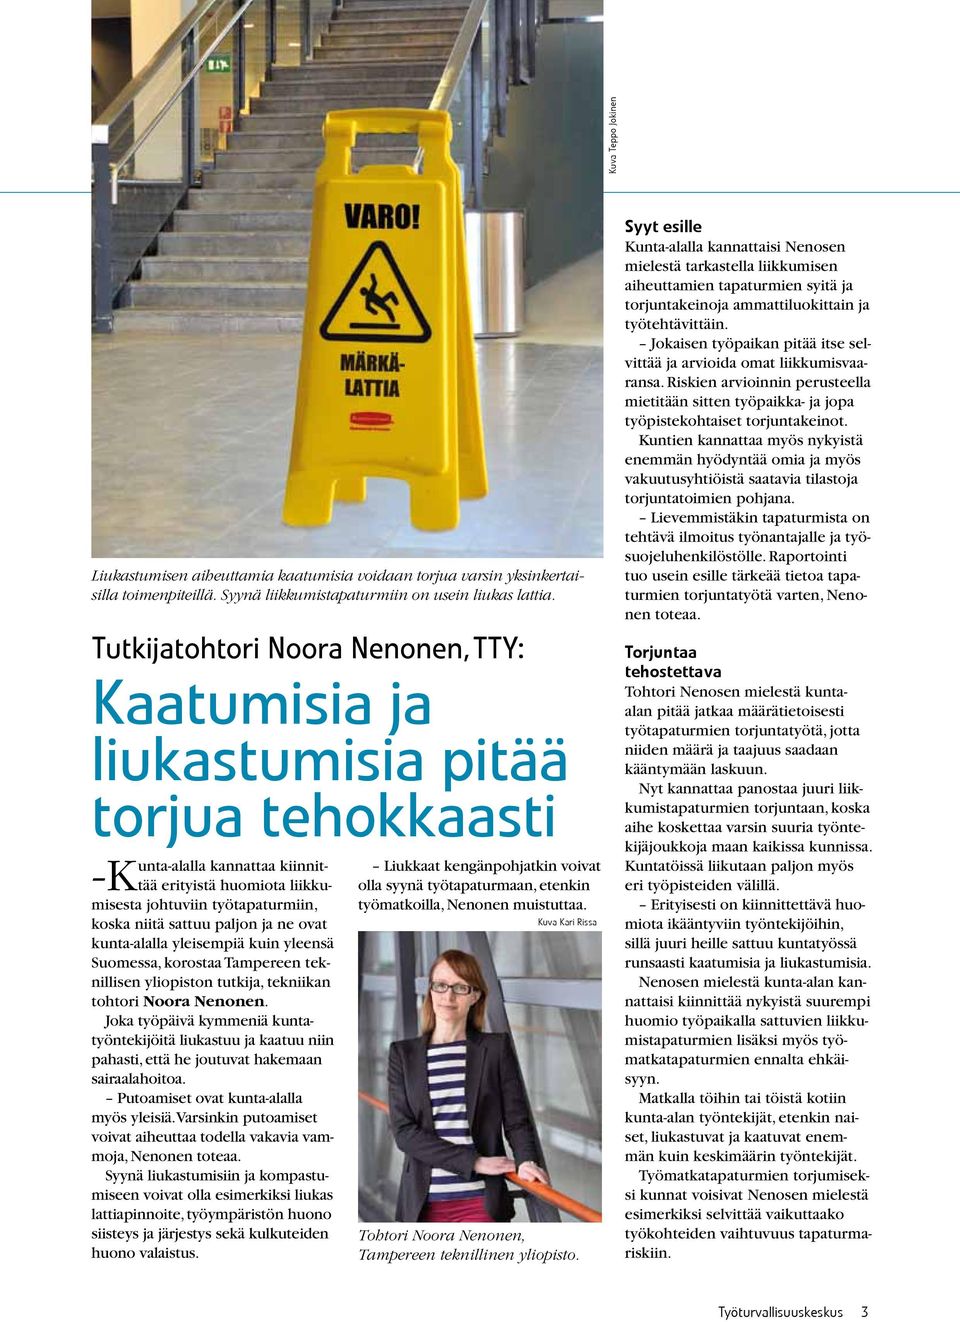 sattuu paljon ja ne ovat kunta-alalla yleisempiä kuin yleensä Suomessa, korostaa Tampereen teknillisen yliopiston tutkija, tekniikan tohtori Noora Nenonen.